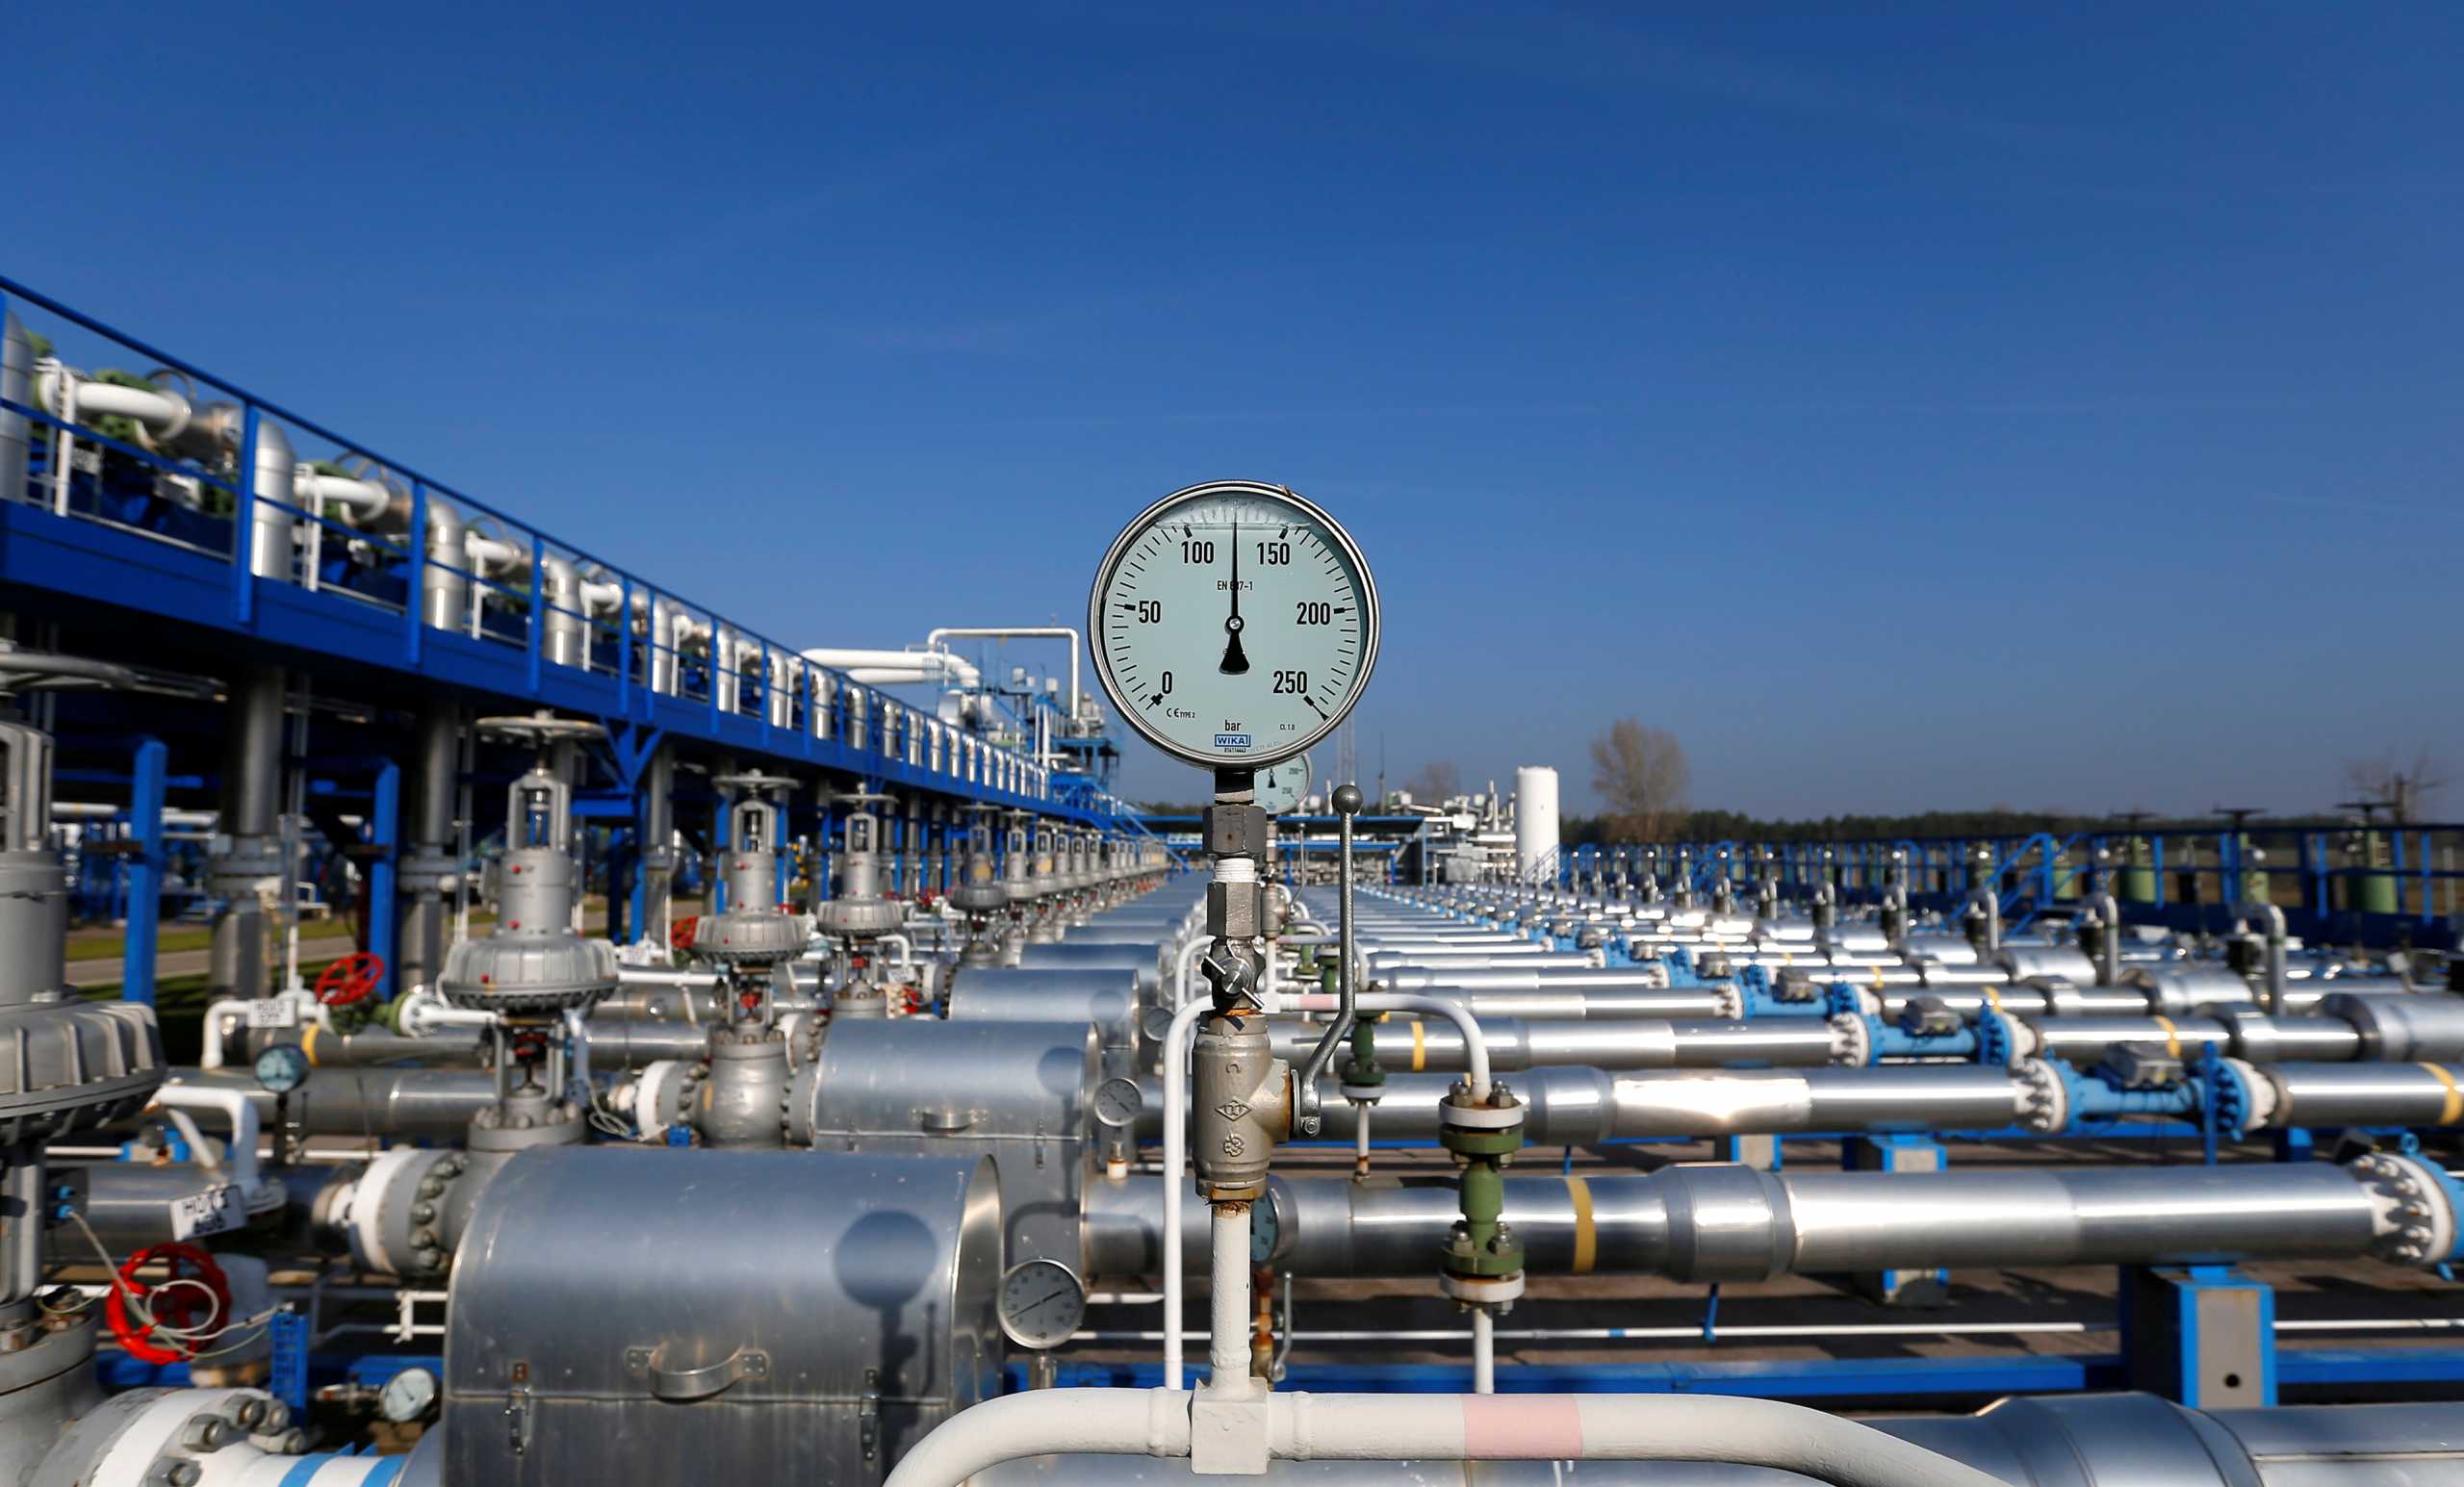 Προσφυγή της Κομισιόν ενάντια στην Πολωνία για περιορισμούς στο διασυνοριακό εμπόριο φυσικού αερίου